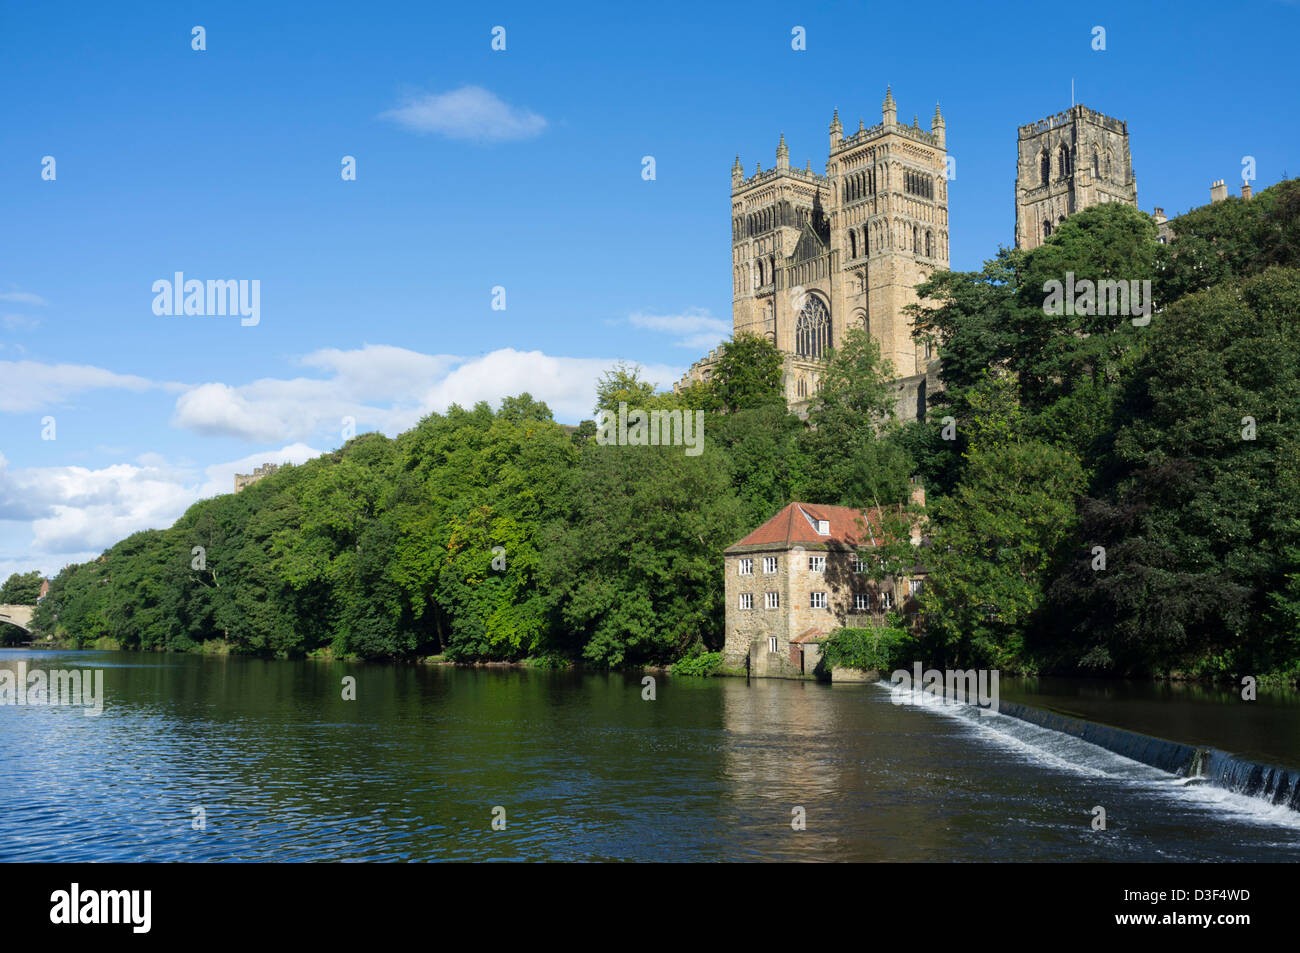 Cathédrale de Durham et de la rivière Wear, Durham Angleterre Banque D'Images